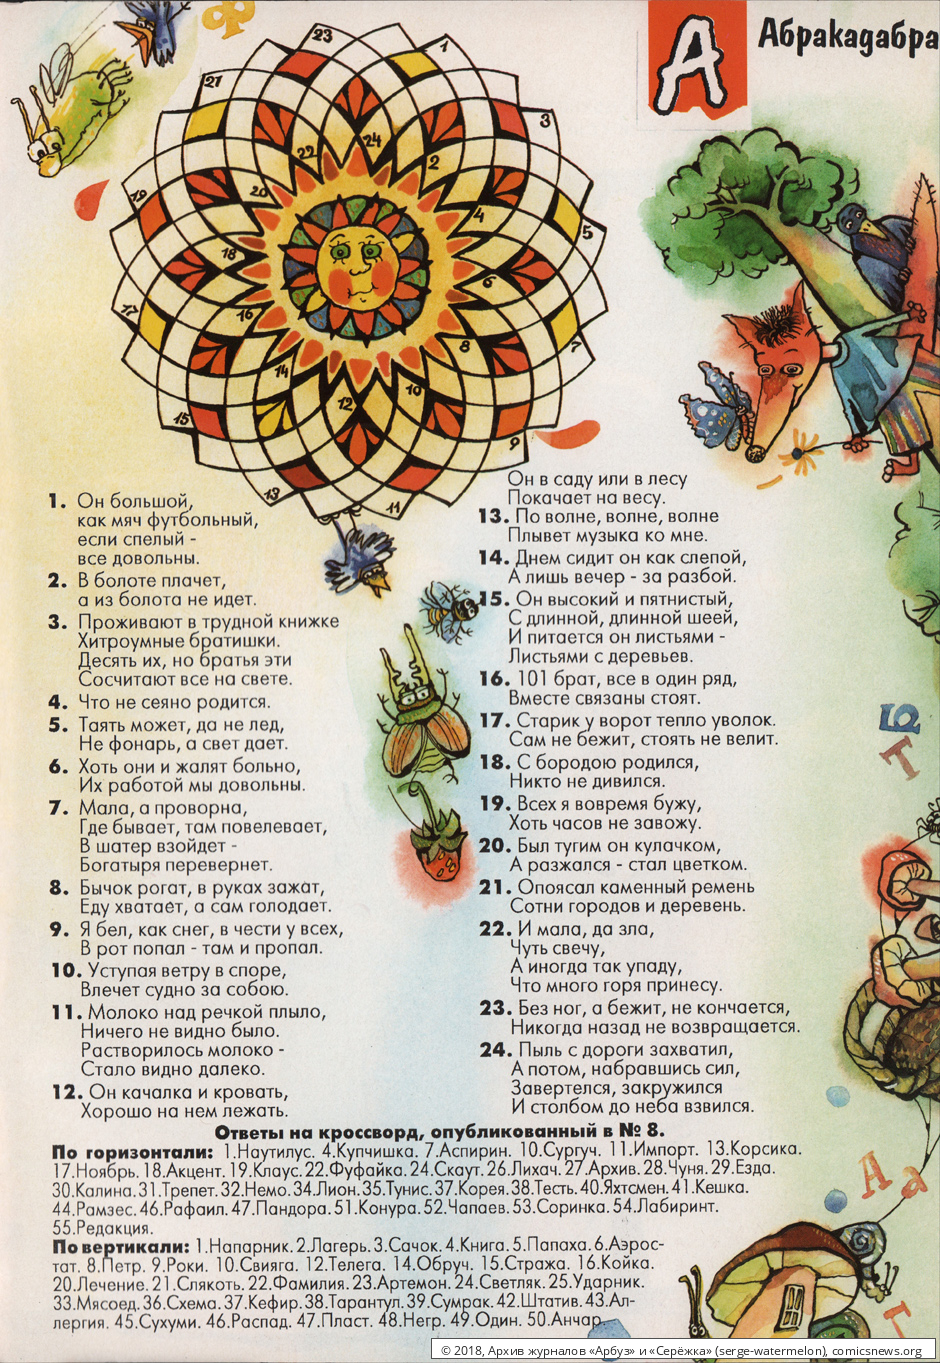 № 35 ( "Арбуз" № 9 / 1997 ) - Архив журналов «Арбуз» и «Серёжка»